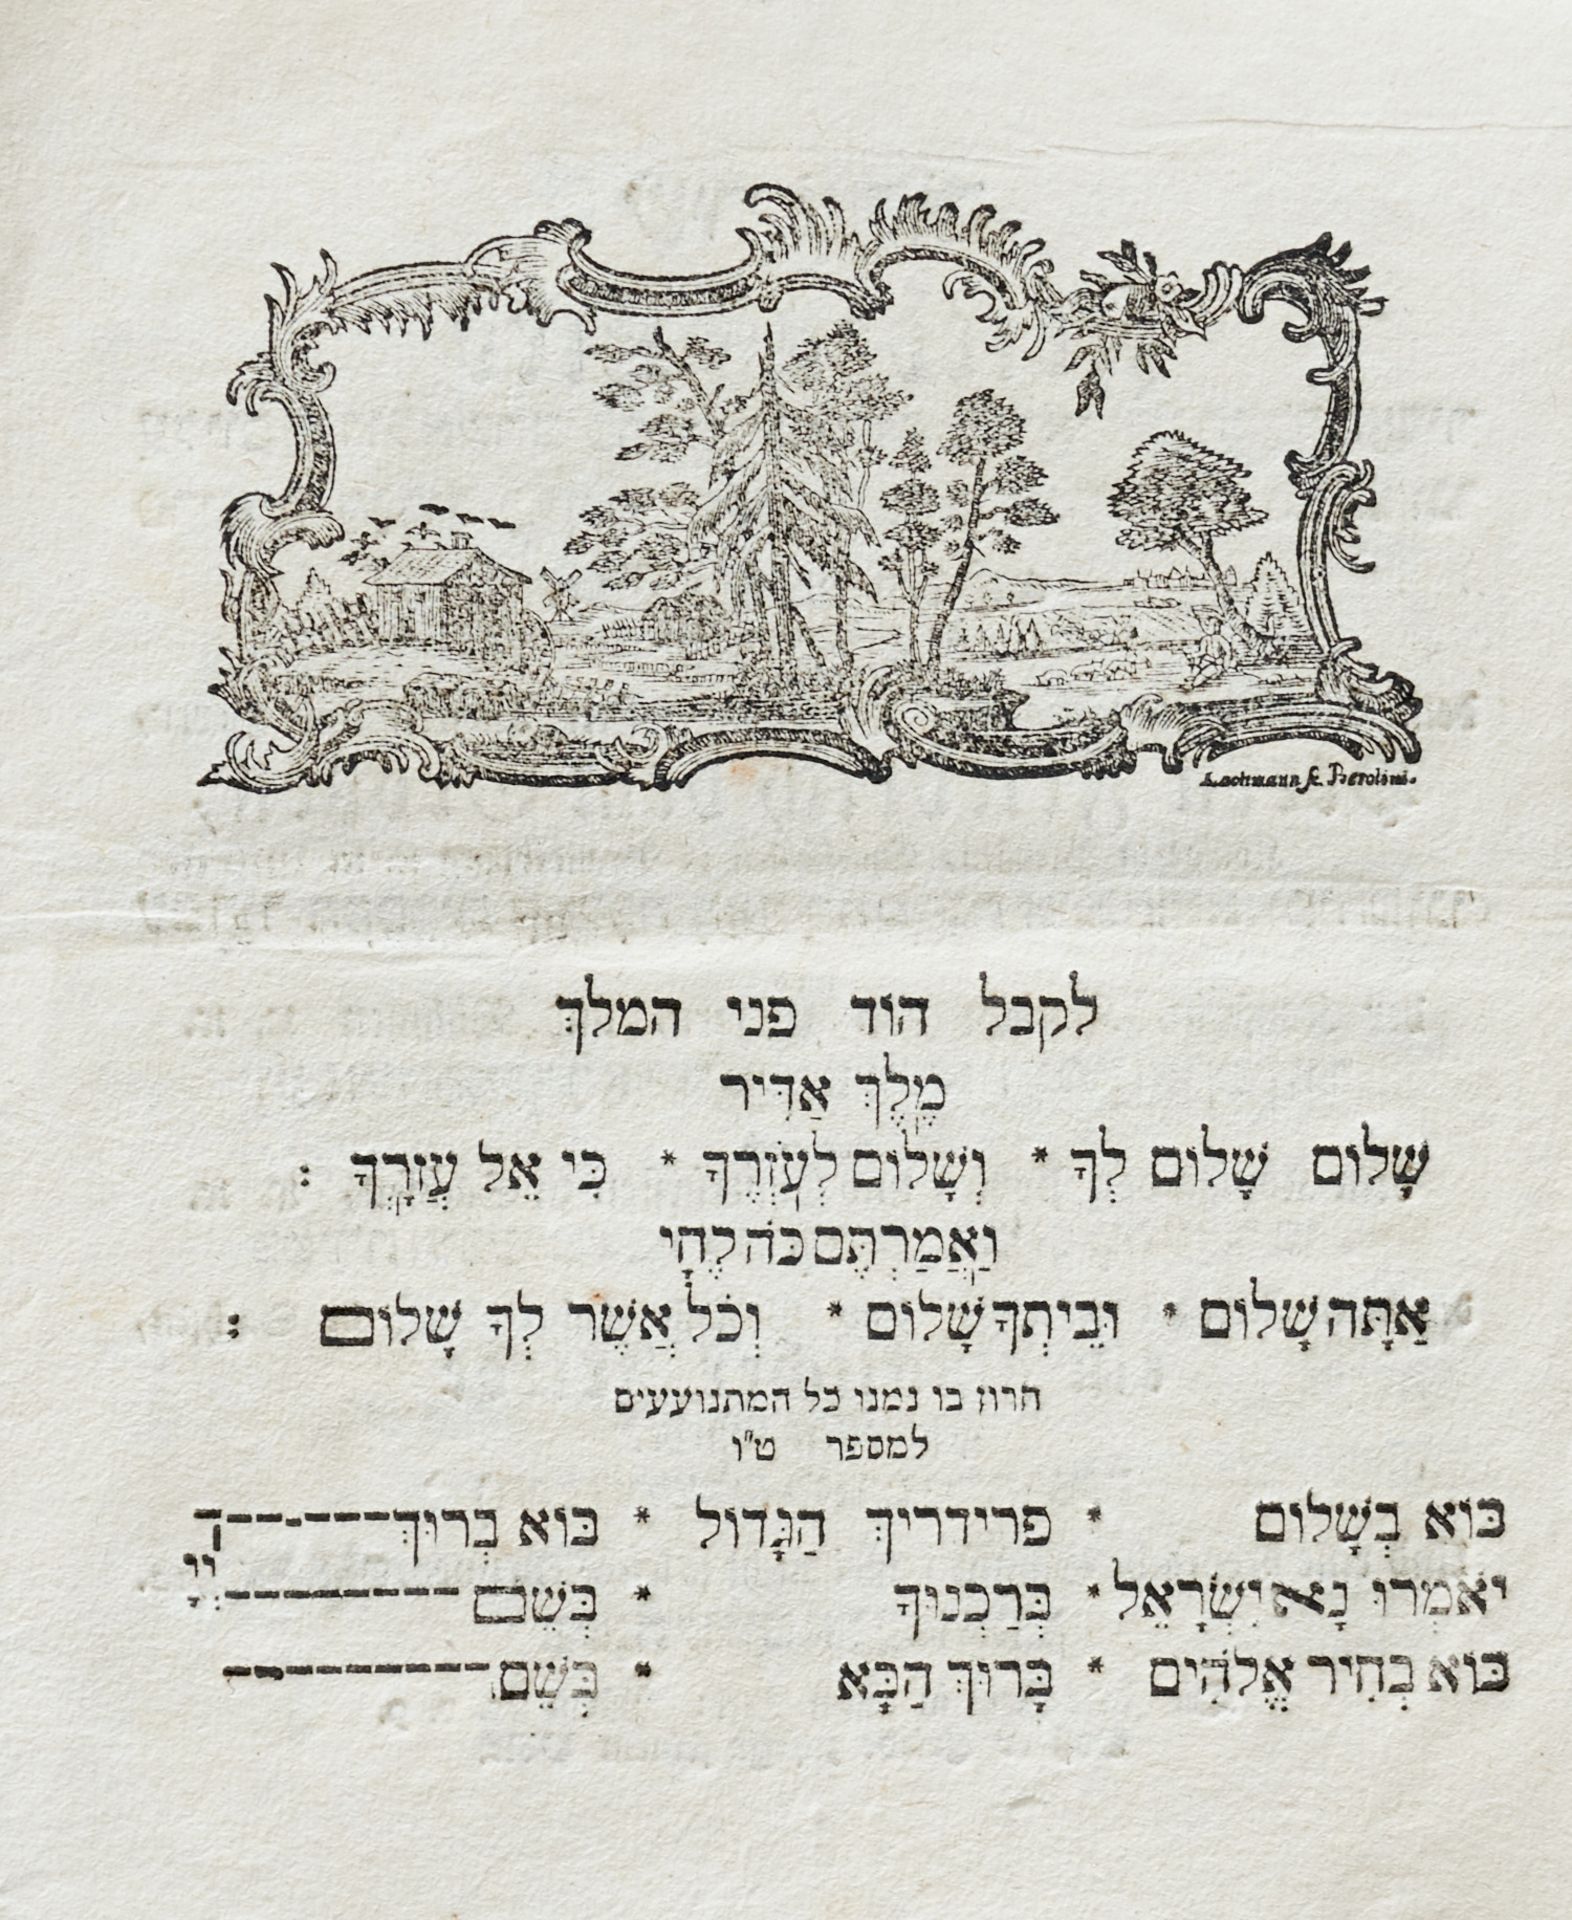 Judaica - Shir shalom - Image 2 of 2